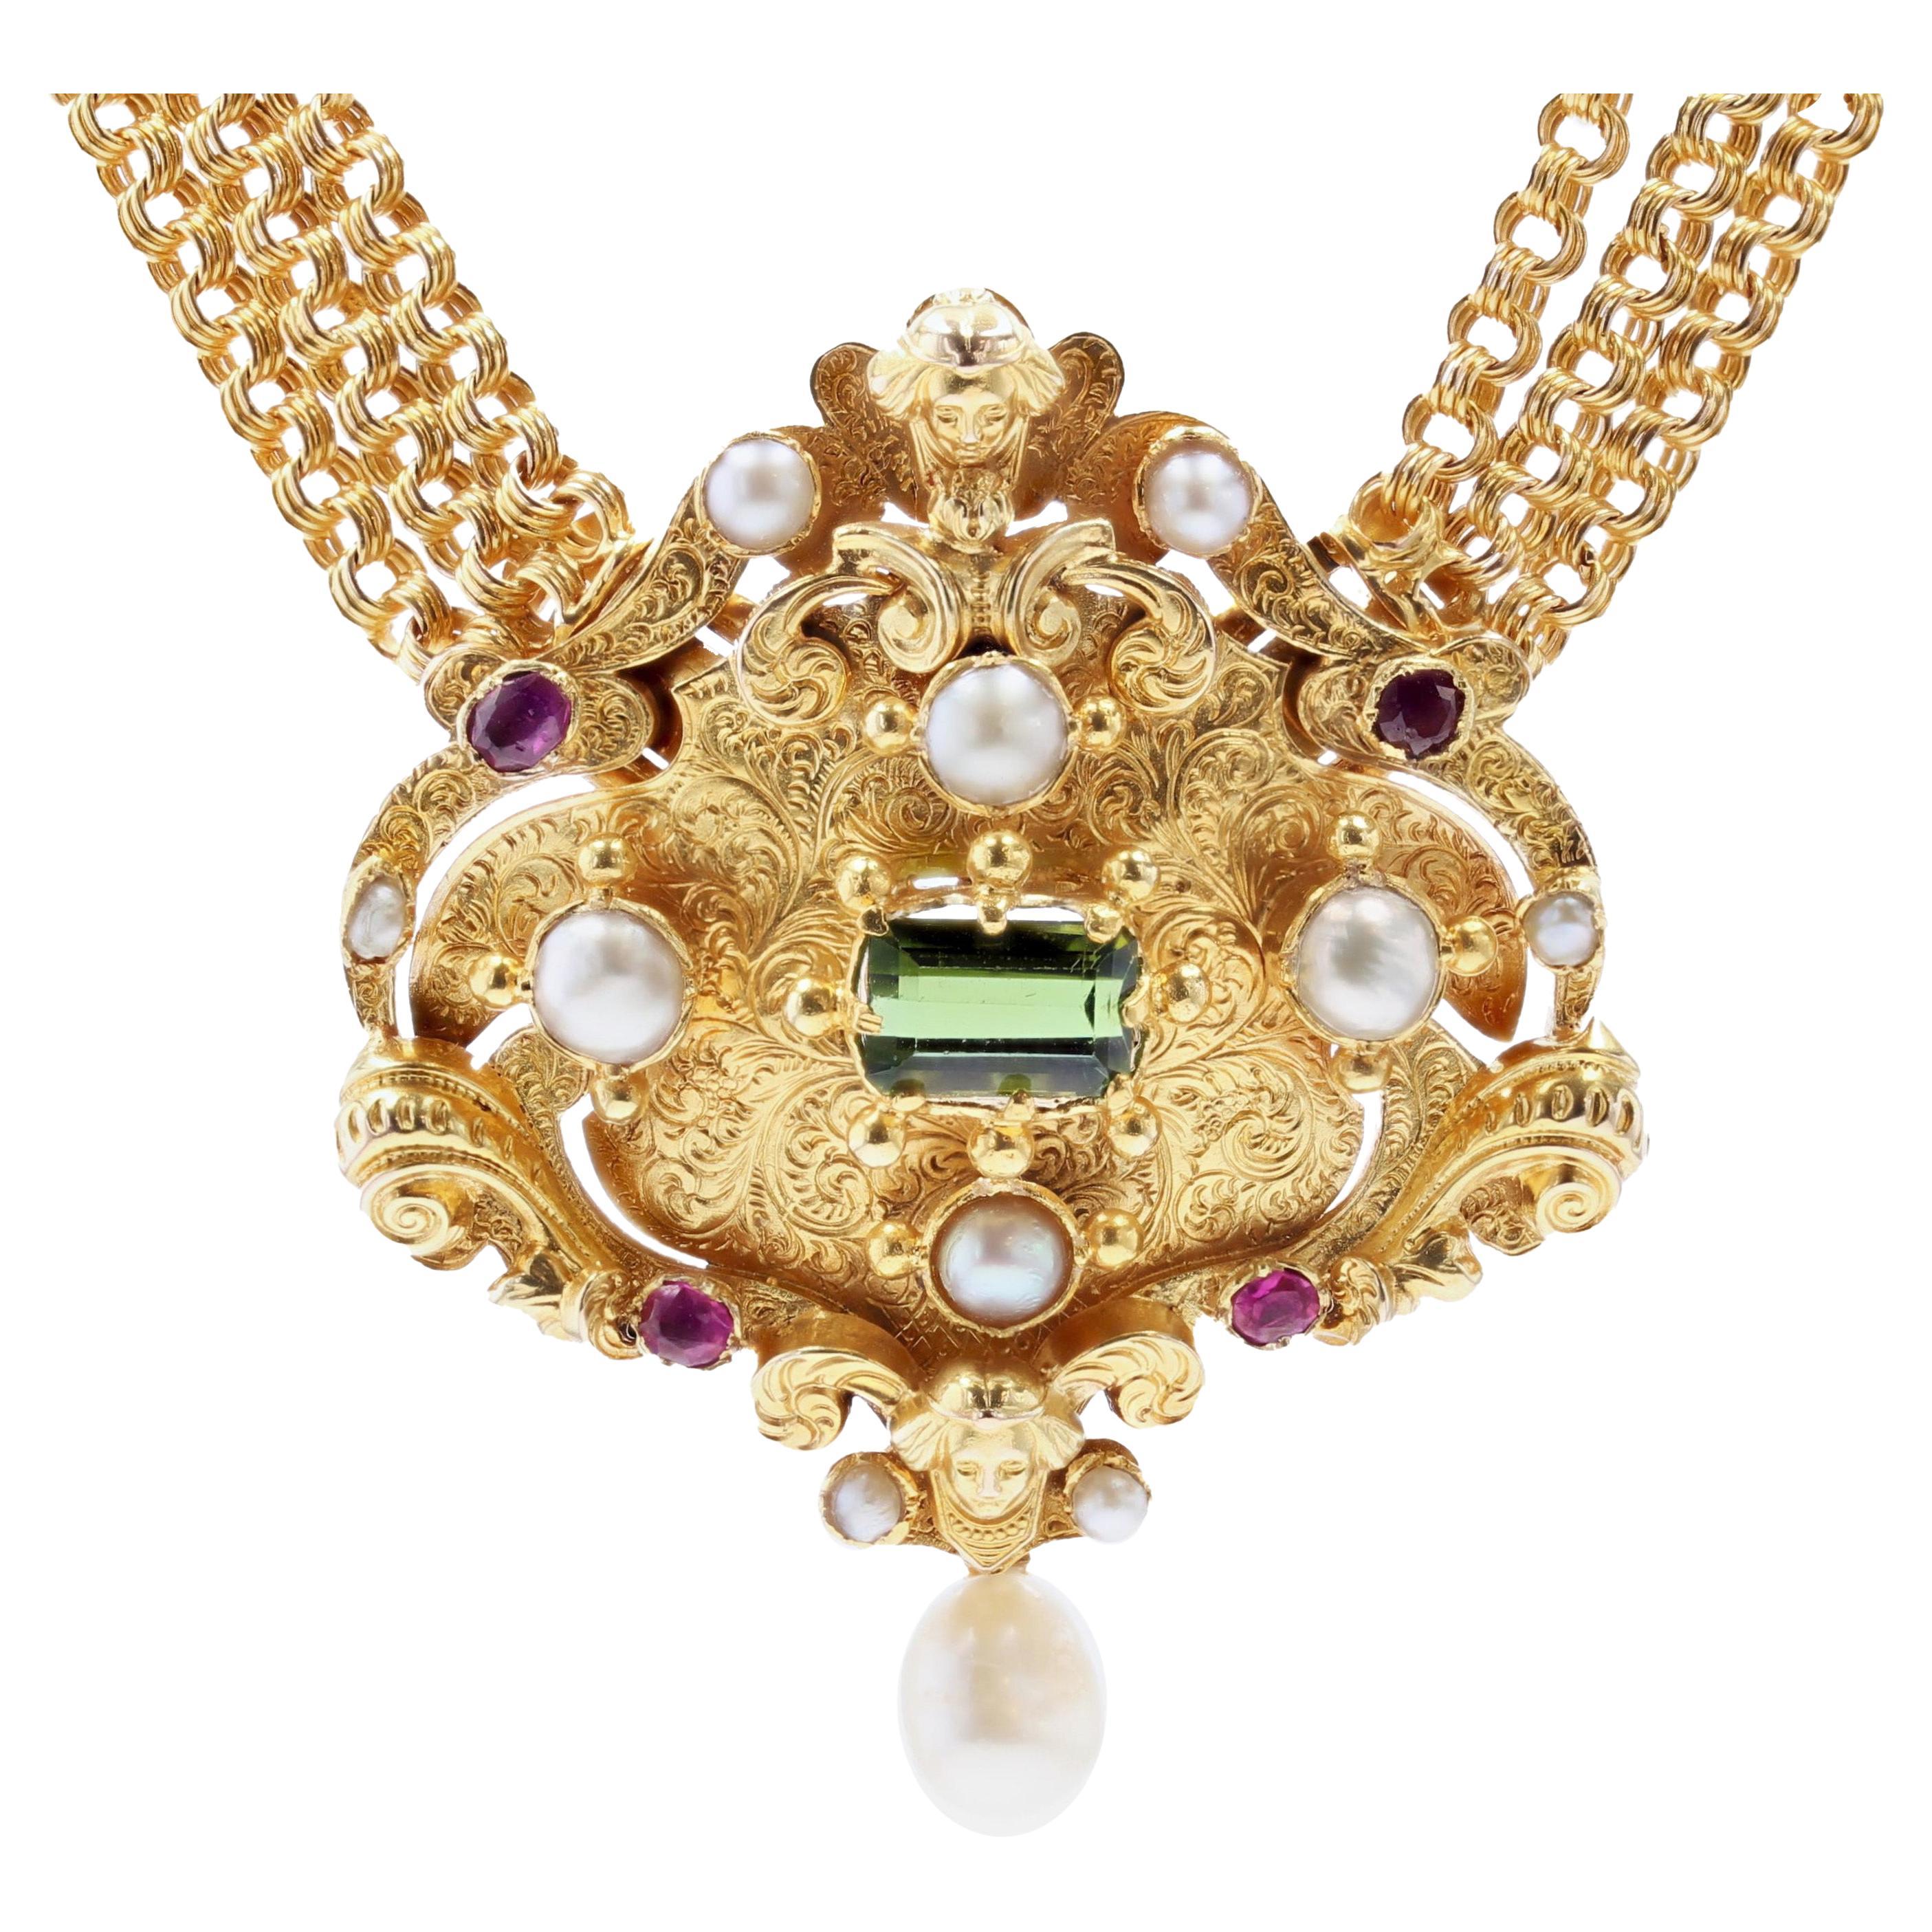 Collier ancien transformable en or jaune 18 carats avec perle franaise, rubis et tourmaline